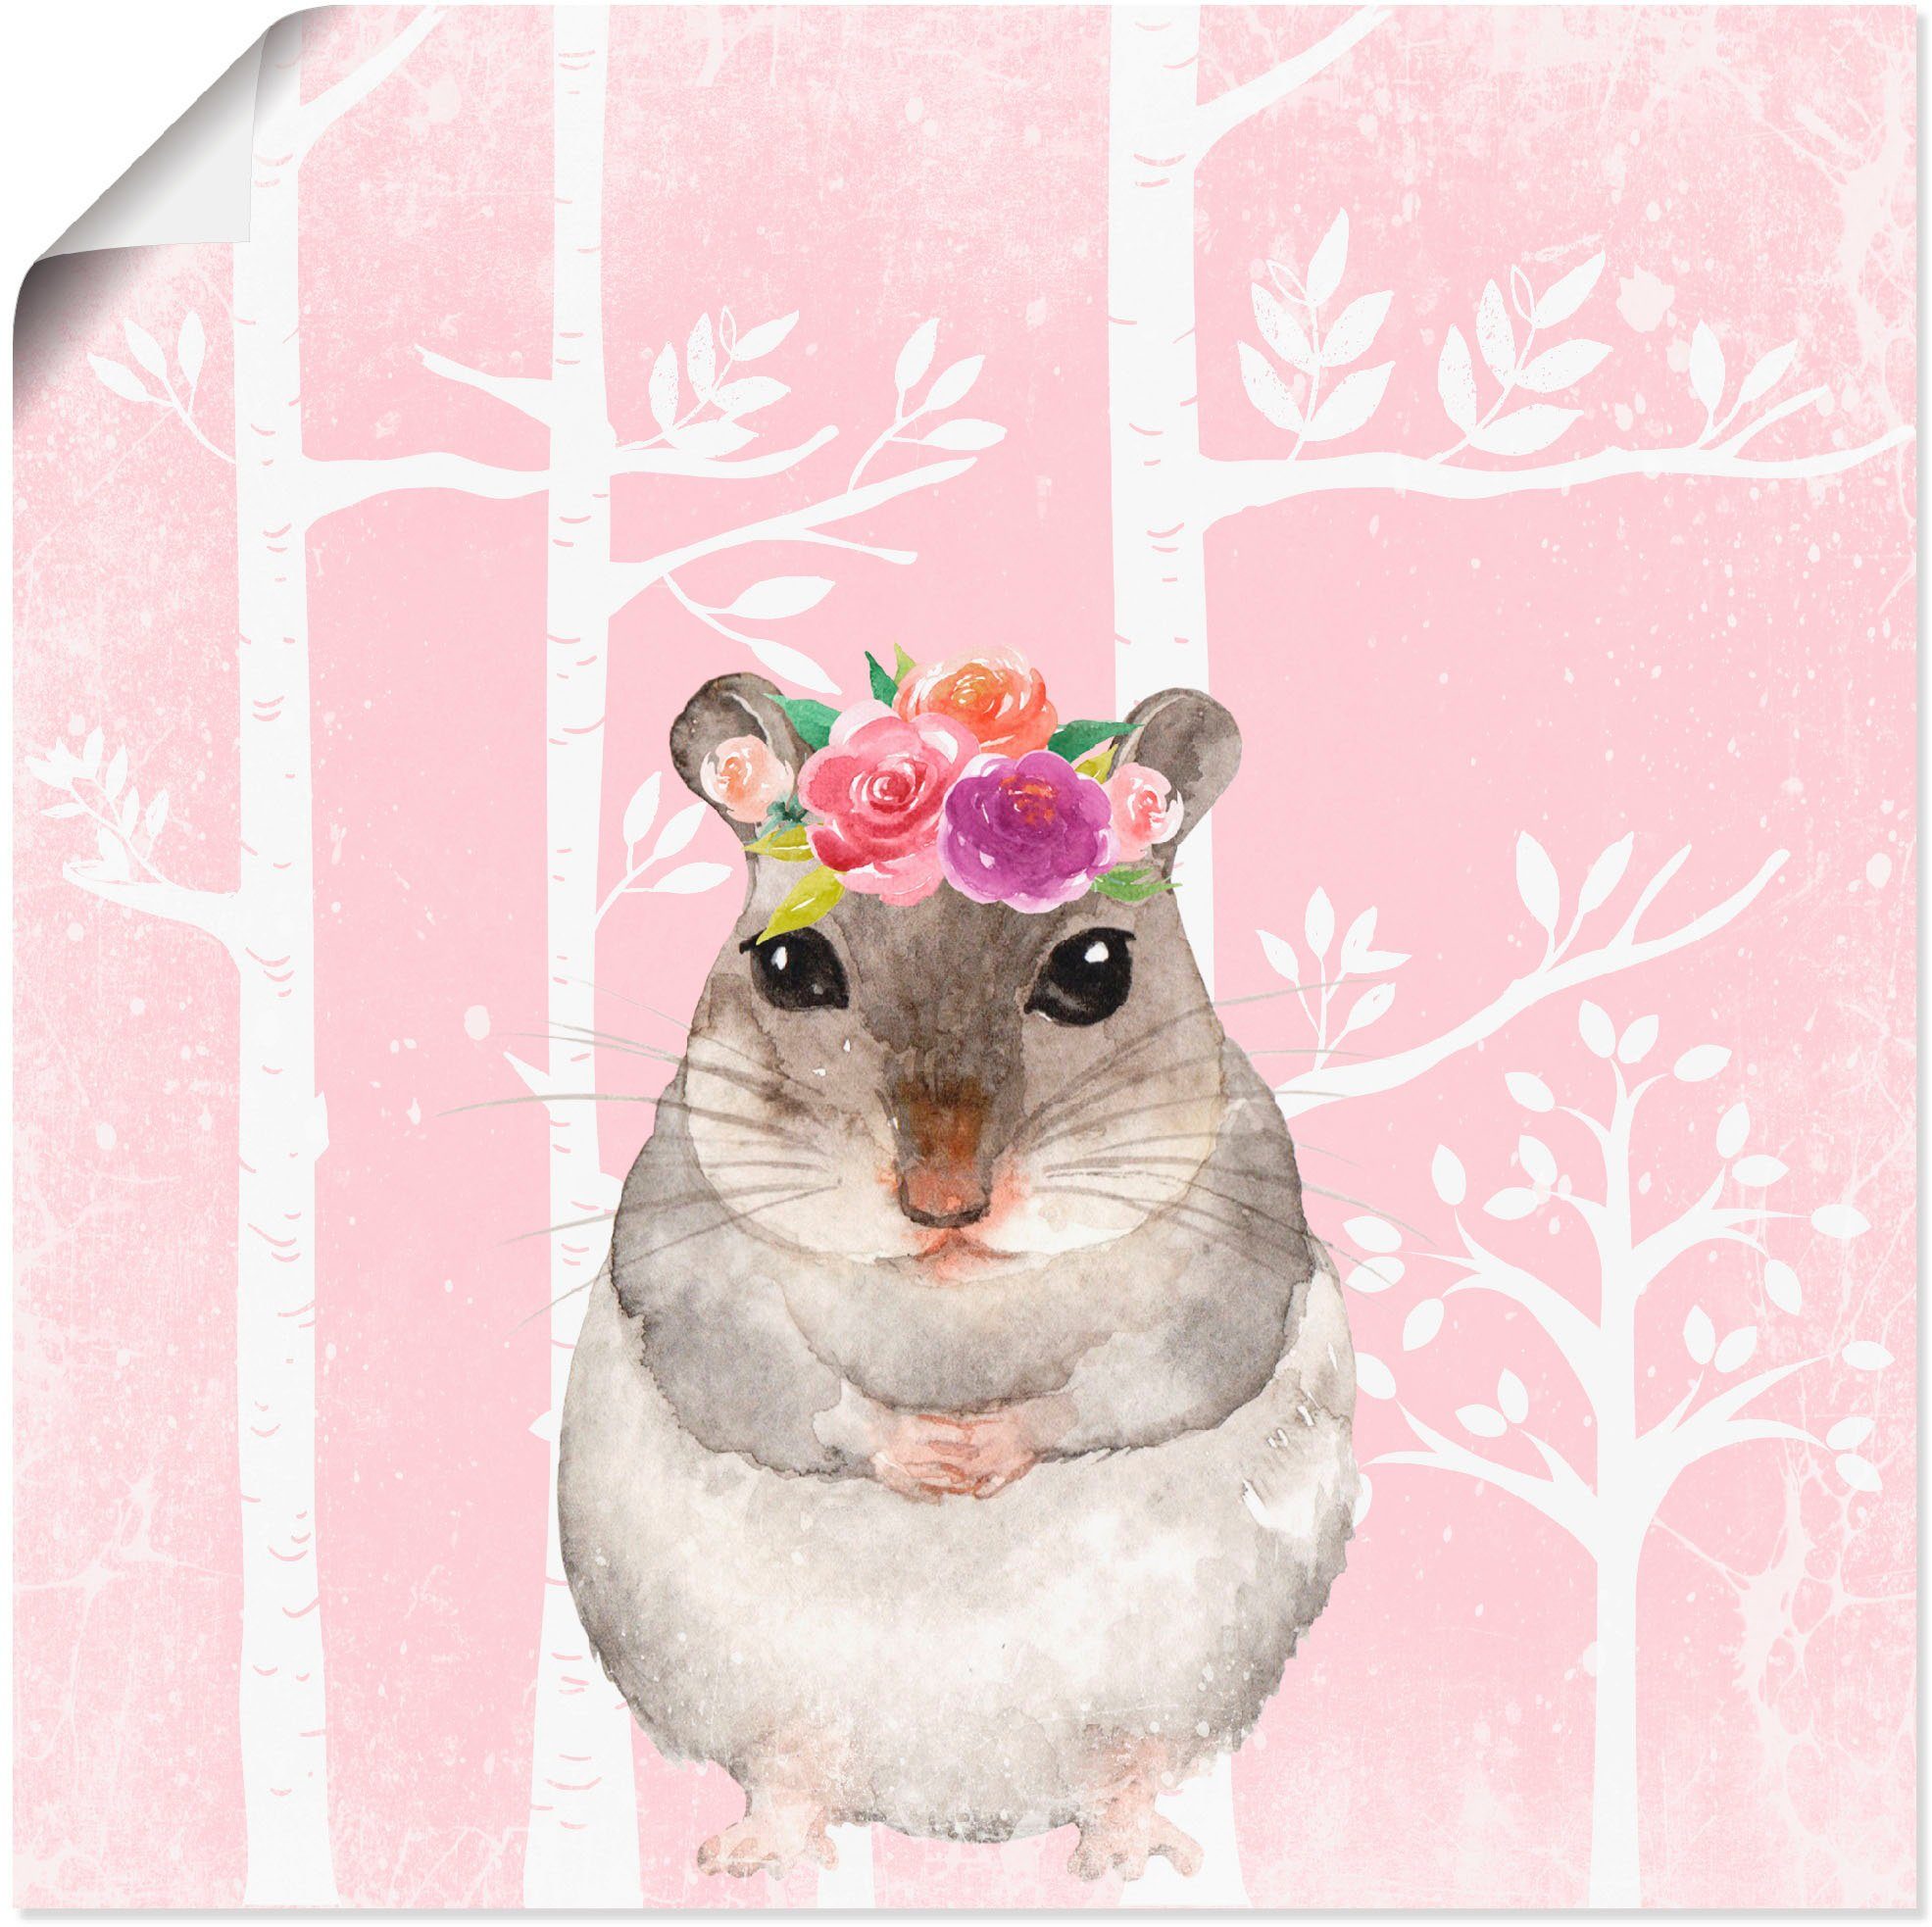 Artland Artprint Hamster met bloemen in pink bos in vele afmetingen & productsoorten - artprint van aluminium / artprint voor buiten, artprint op linnen, poster, muursticker / wand